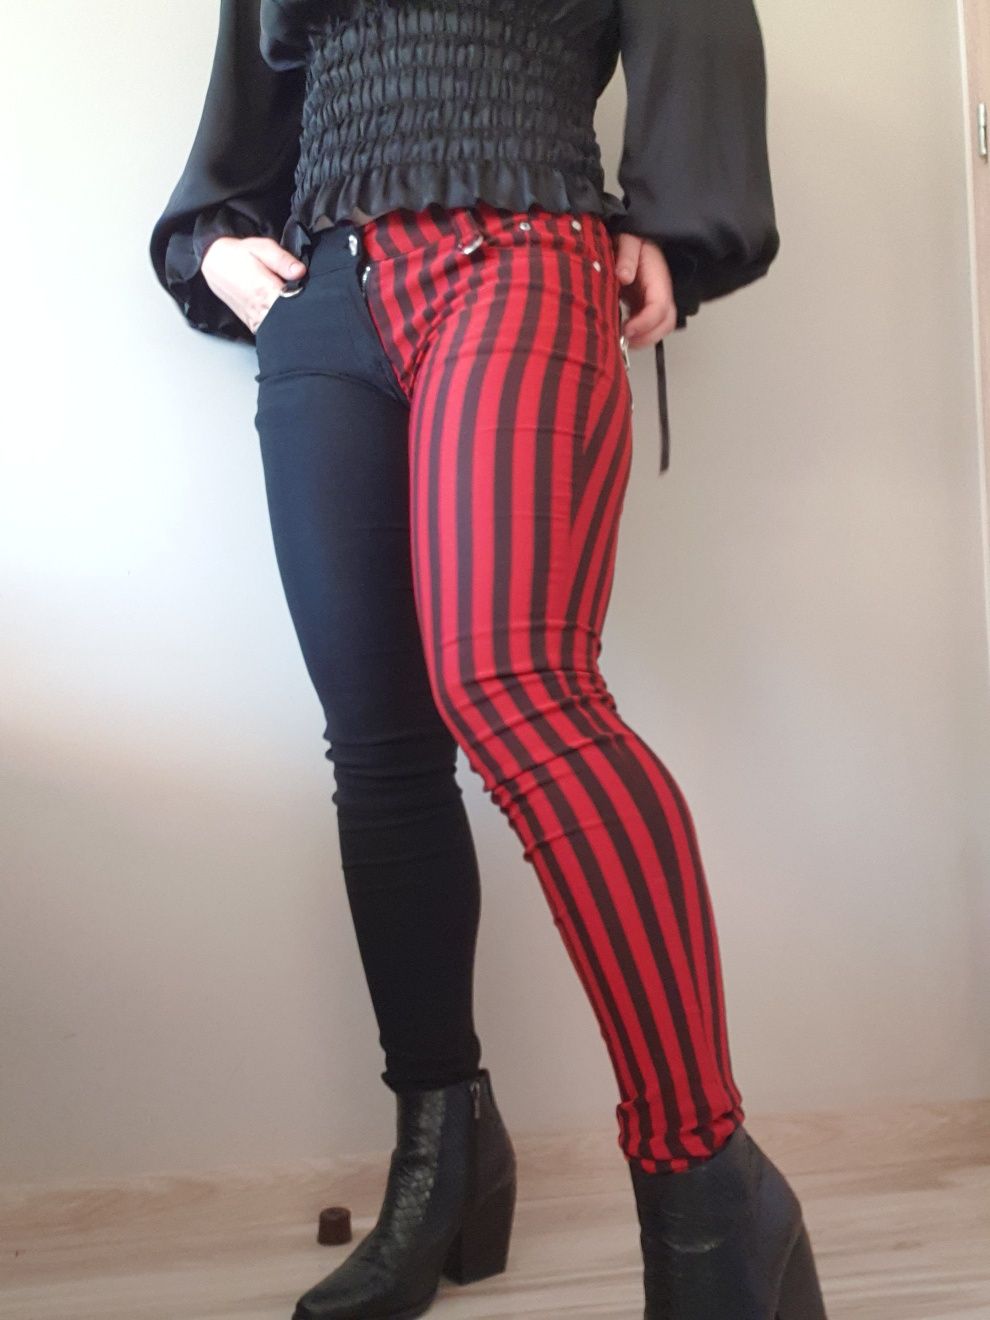 Spodnie biodrówki różne nogawki czerwono czarne paski Banned S alterna